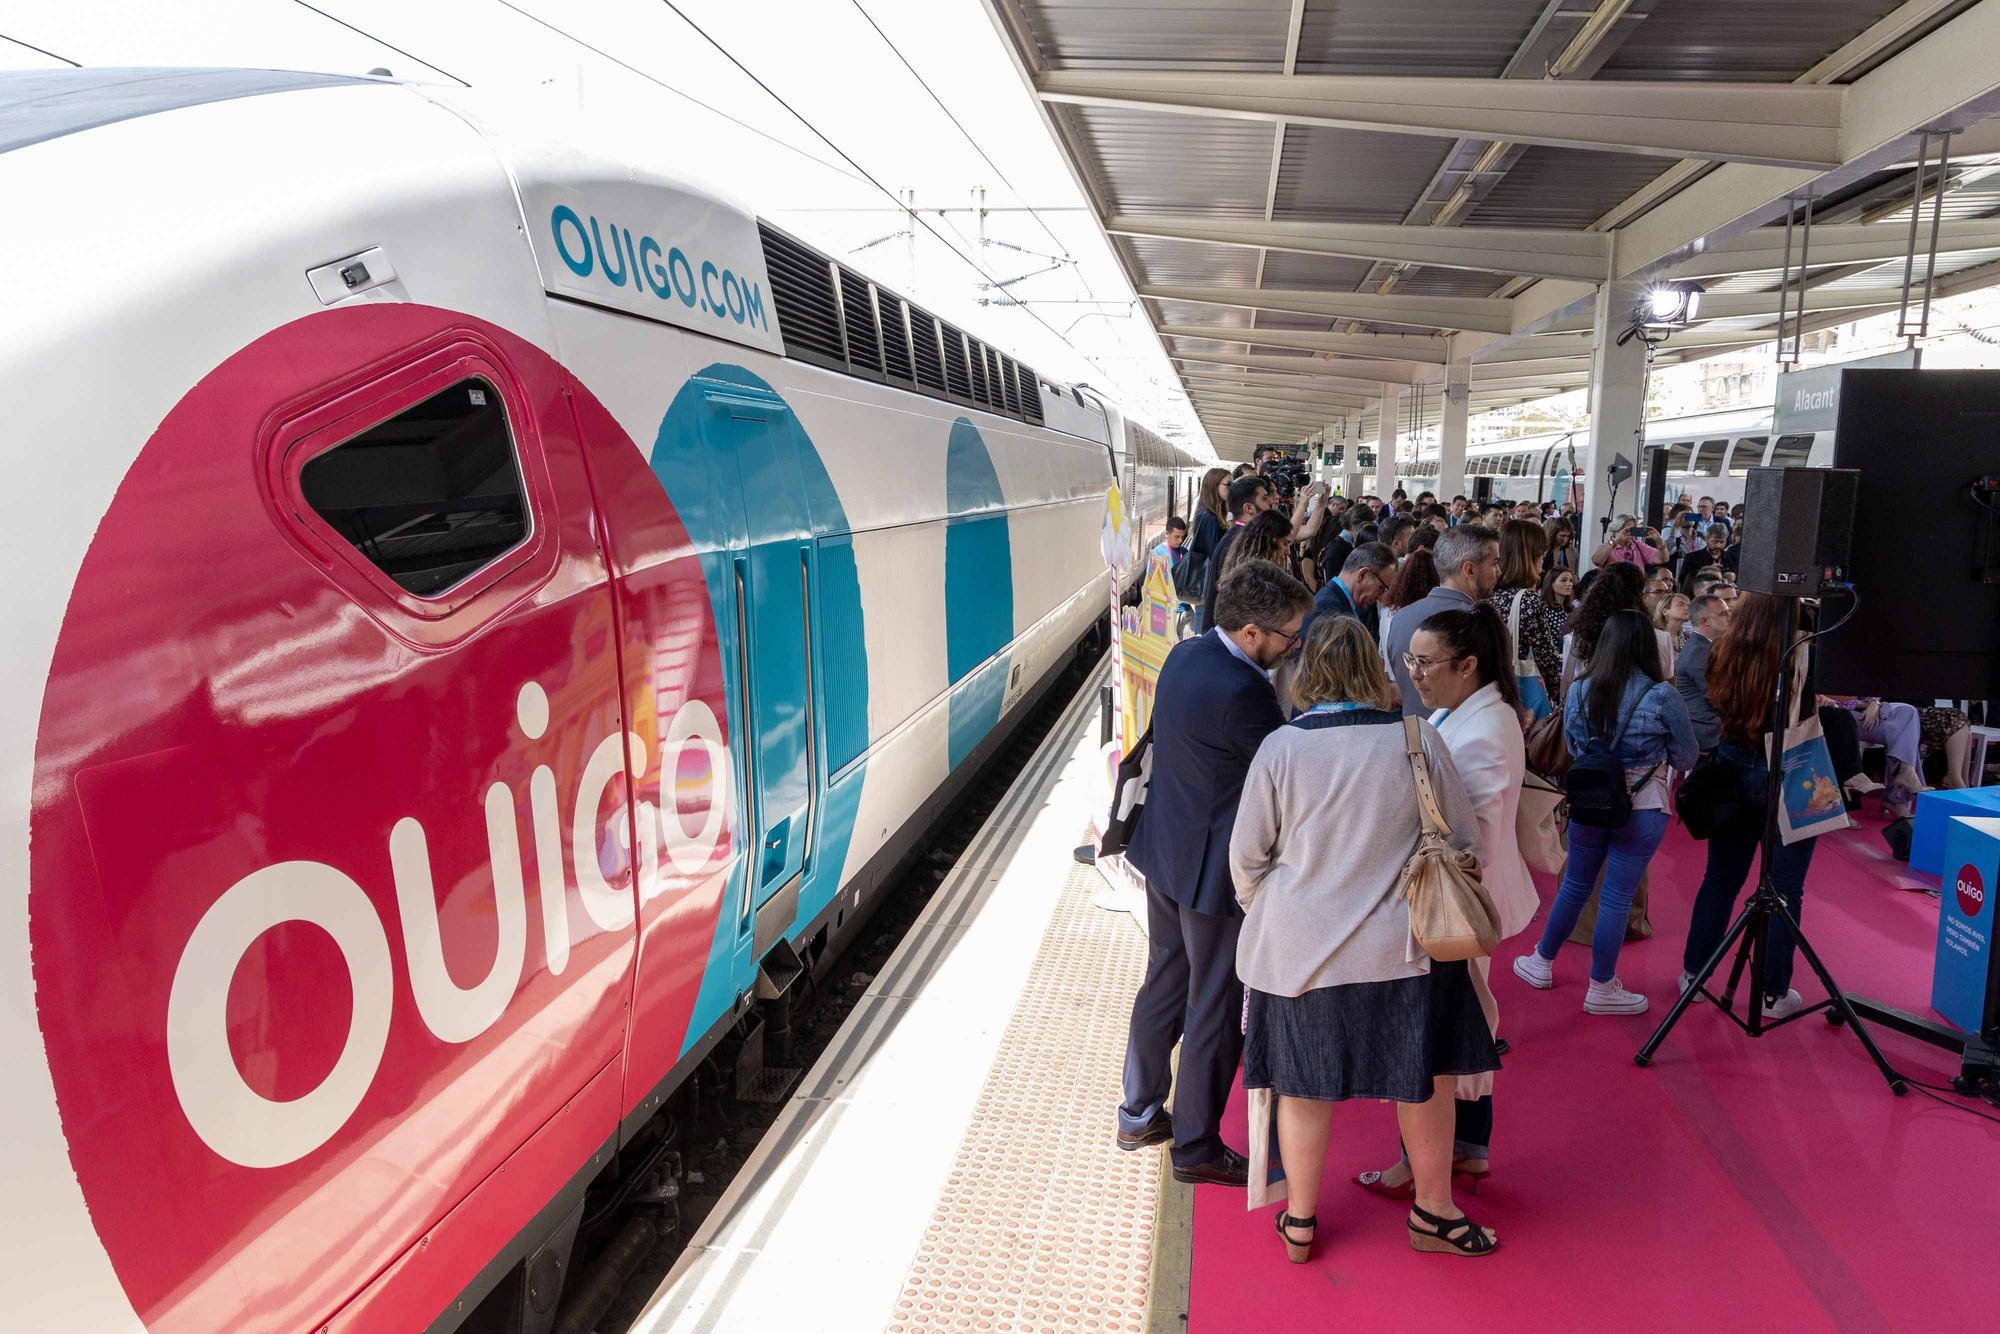 El tren de alta velocidad y bajo coste Ouigo arranca en Alicante